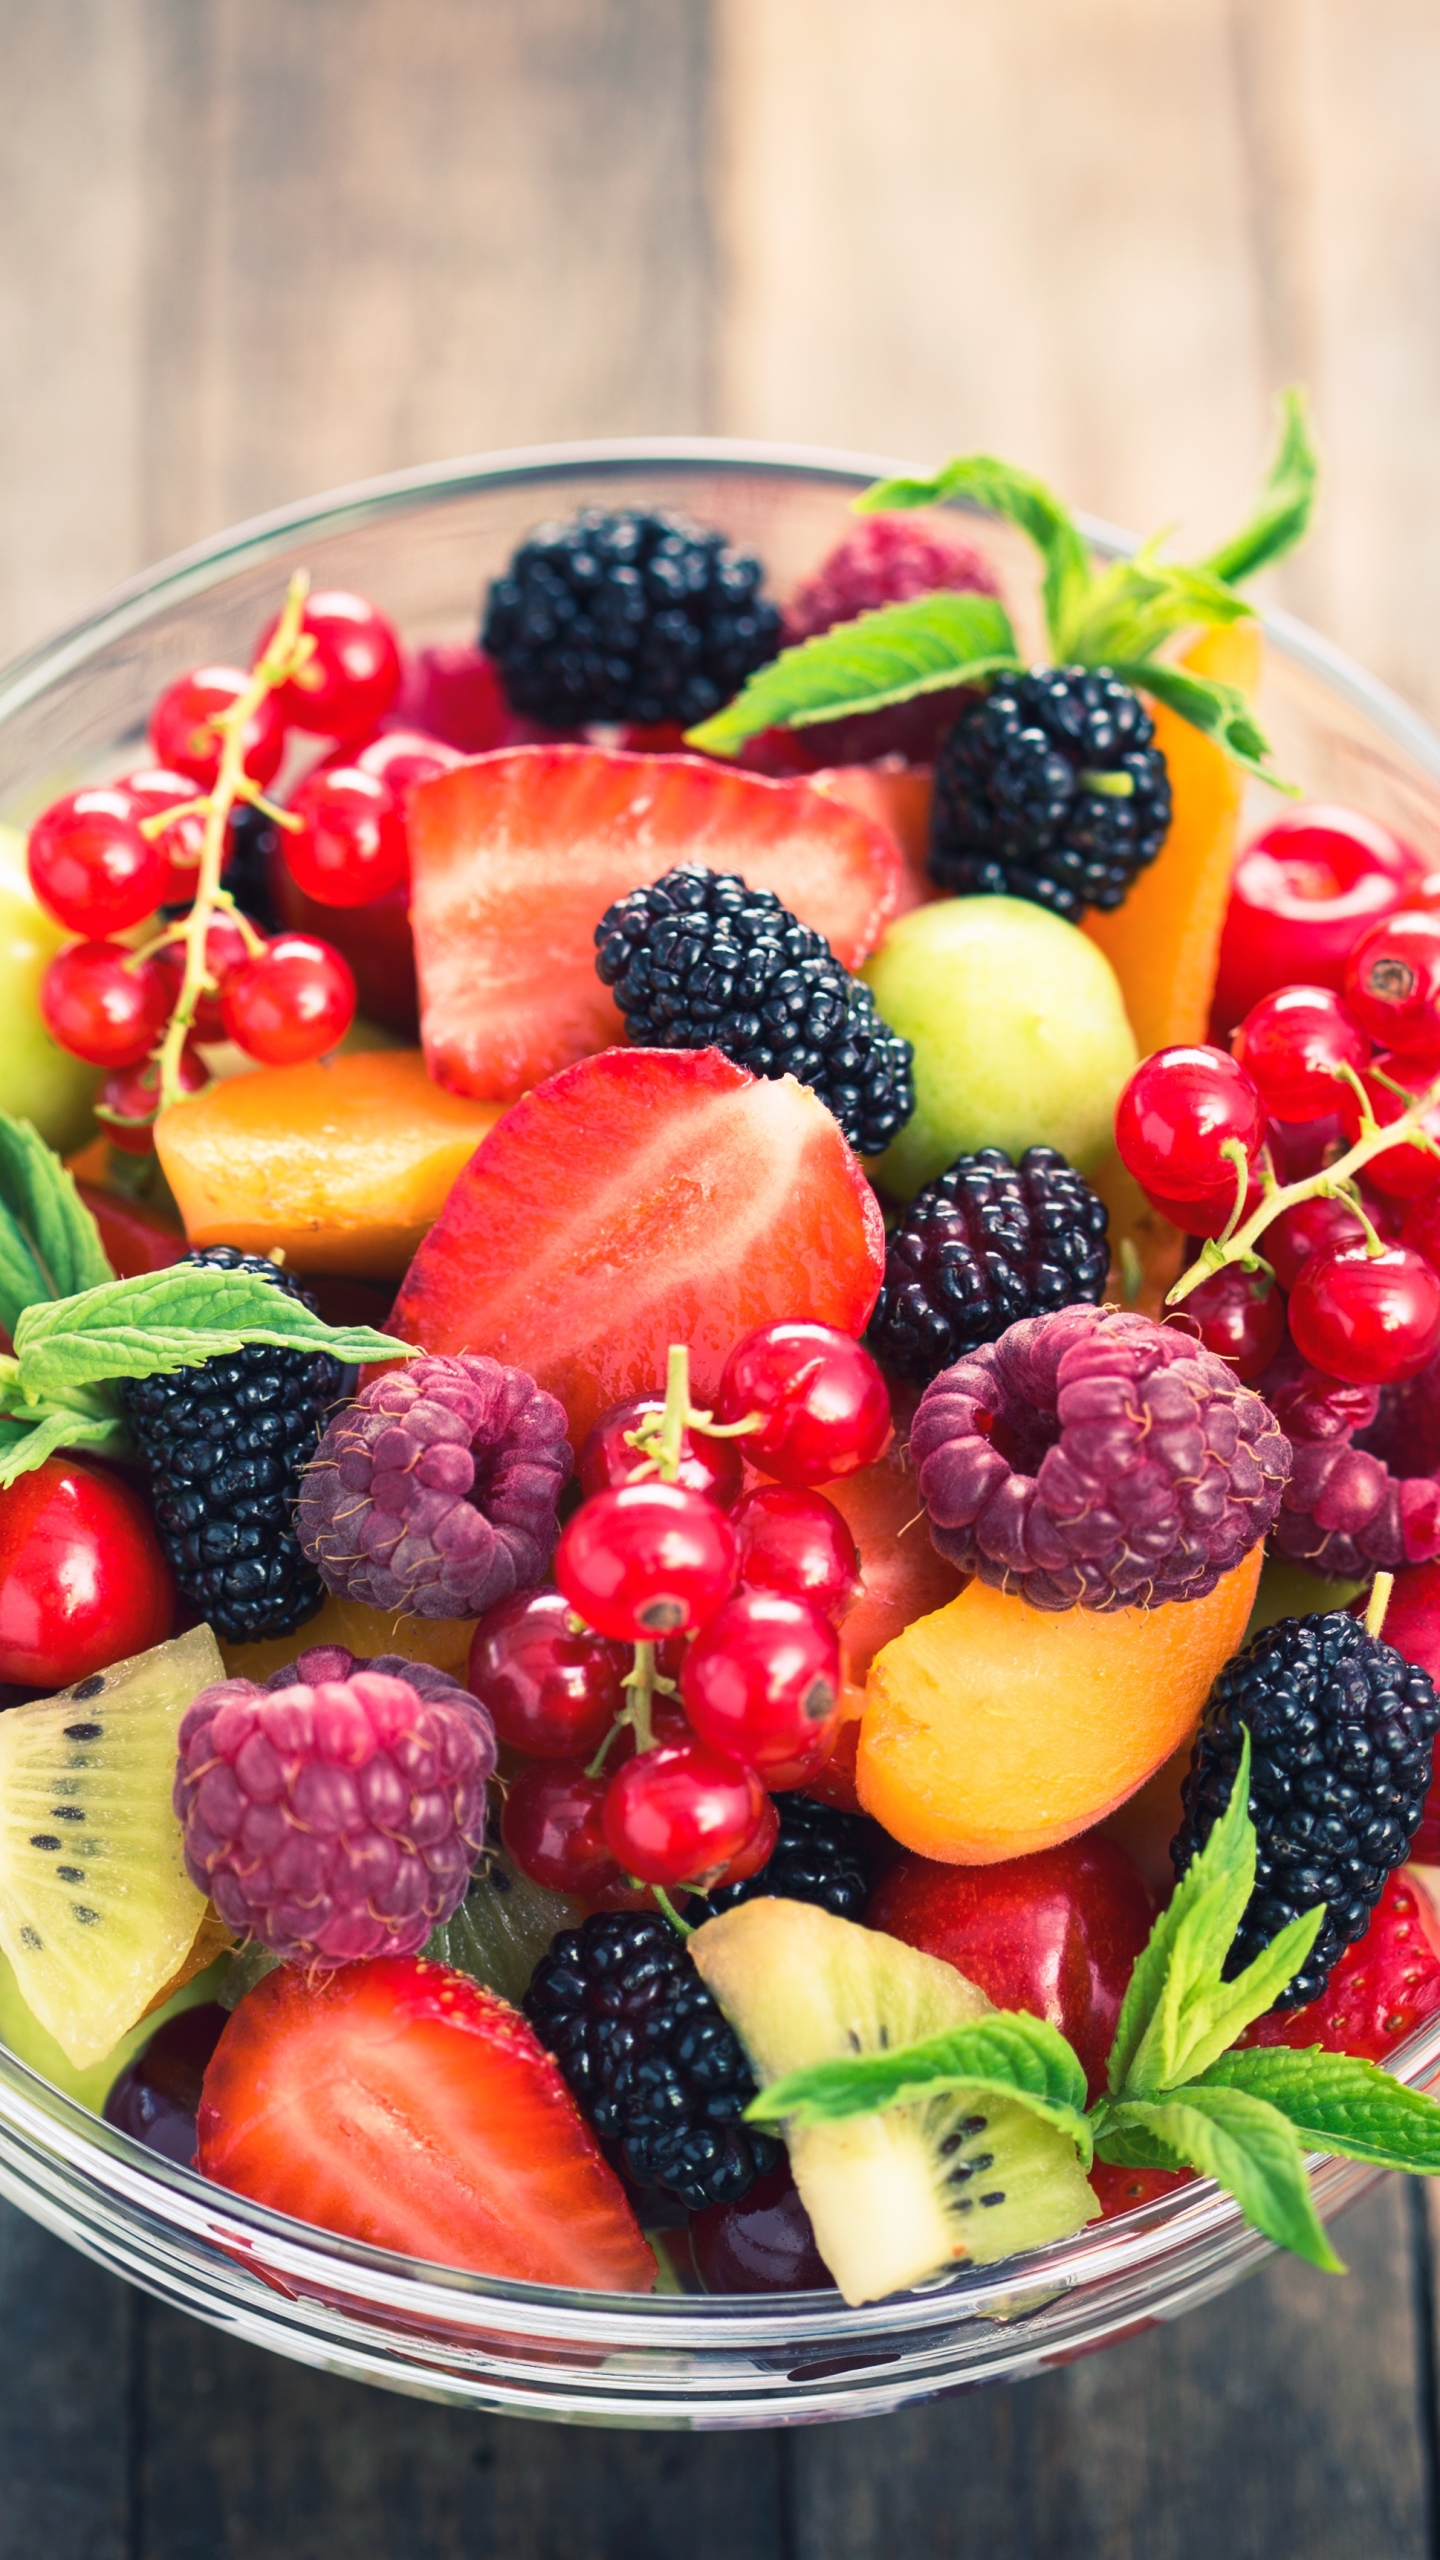 1139614 下載圖片 食物, 水果, 覆盆子, 树莓, 草莓, 醋栗, 黑加仑, 黑莓 - 免費壁紙和屏保